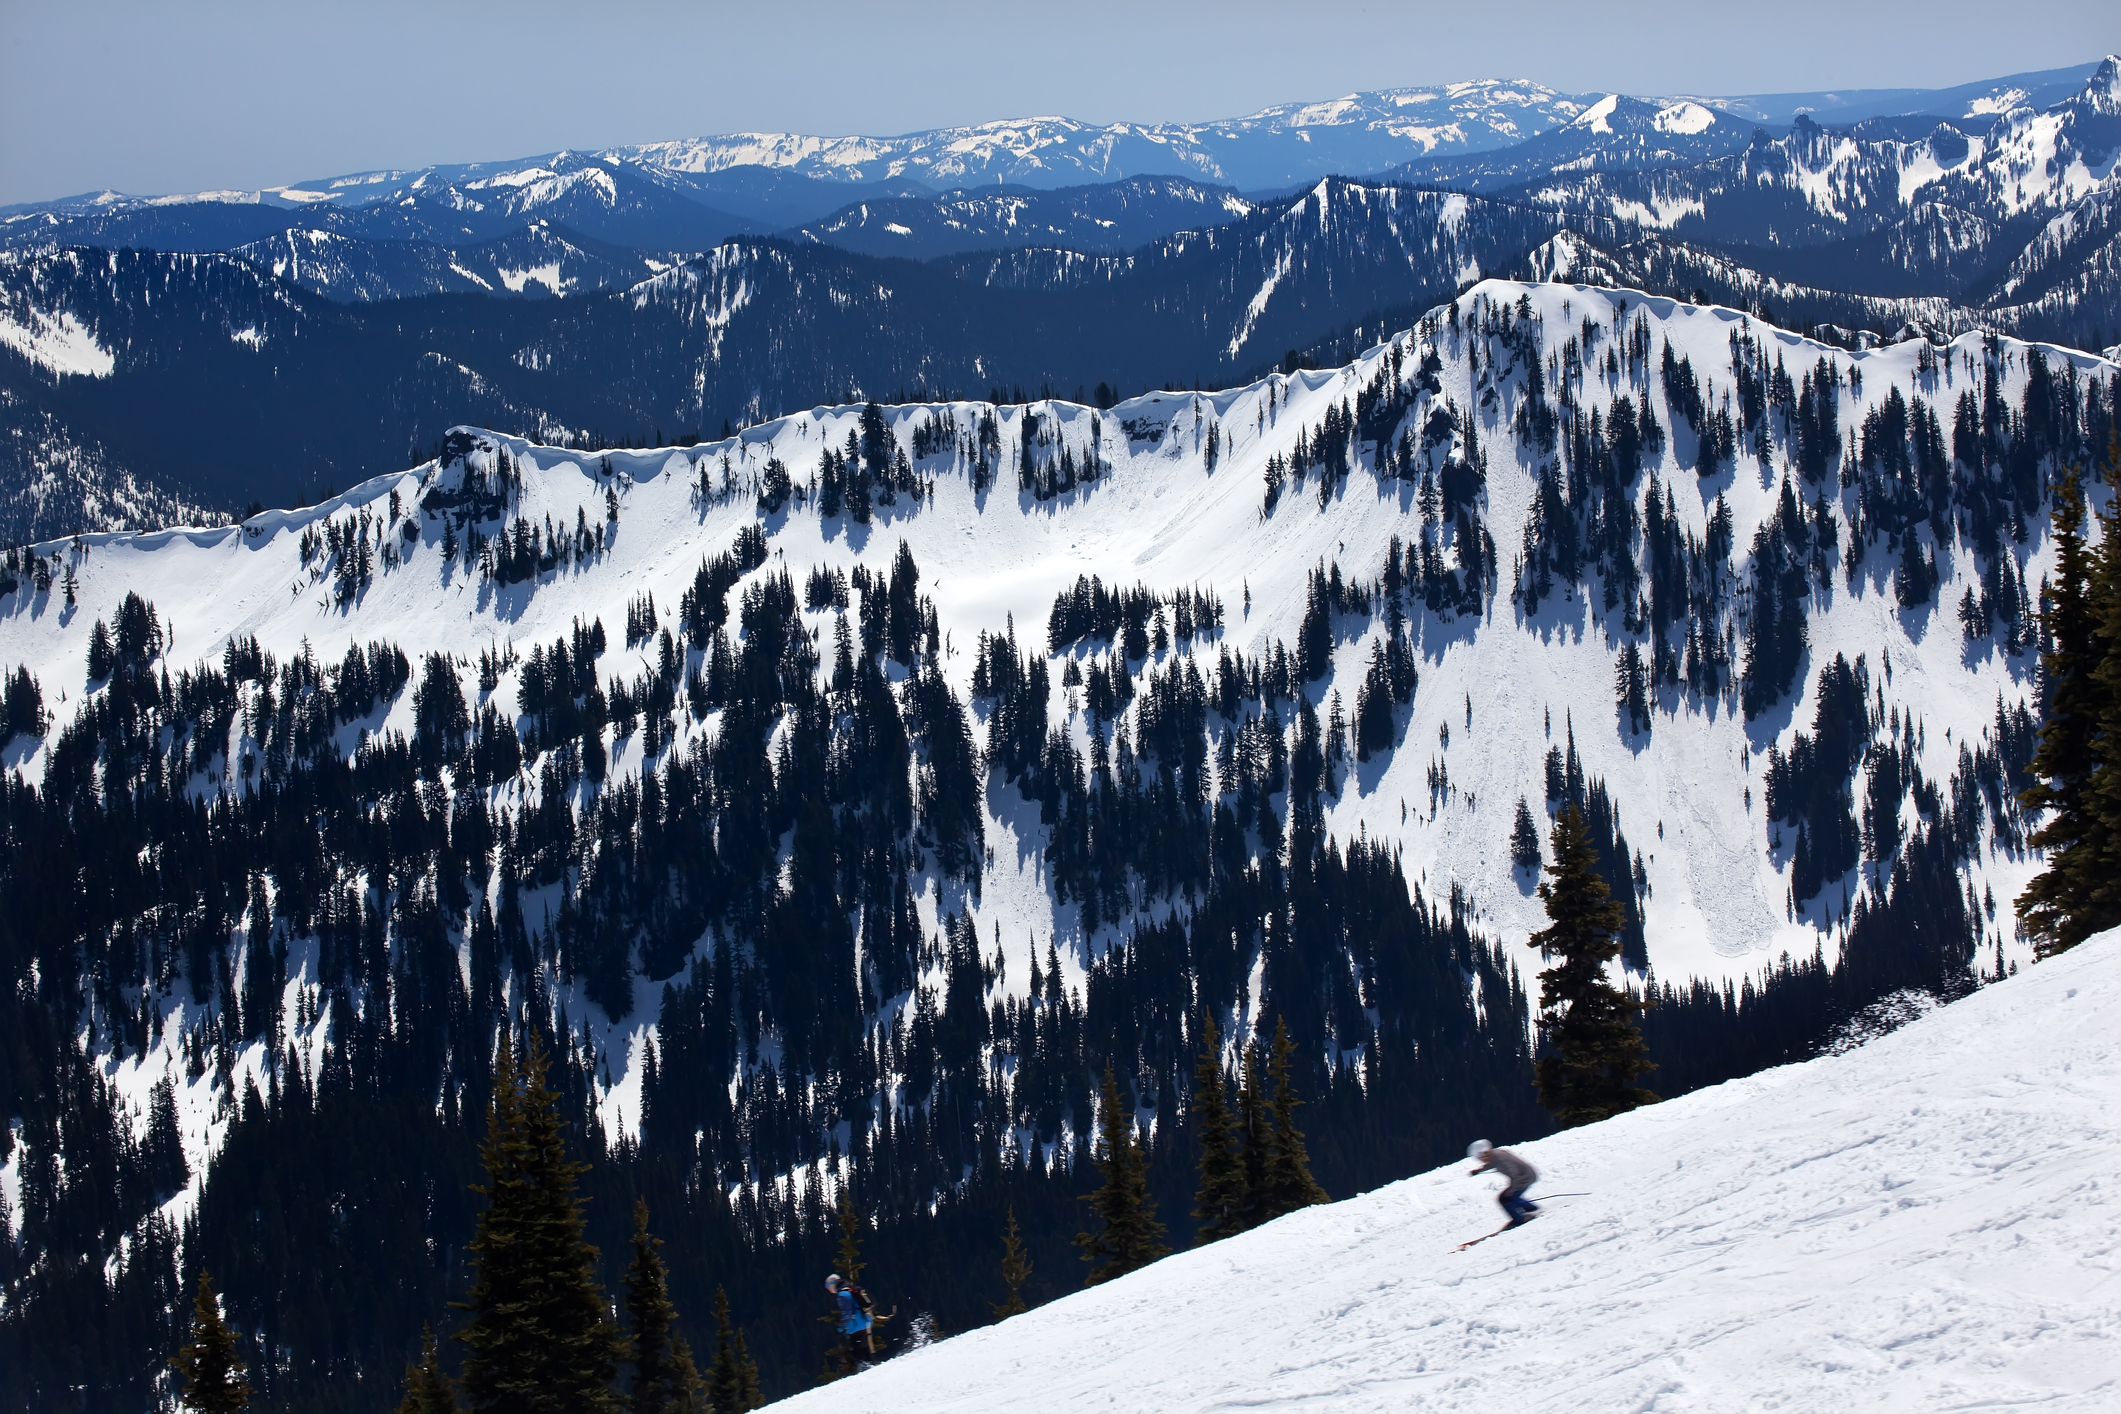 Skiing a snowy ridge with mountains on the horizon